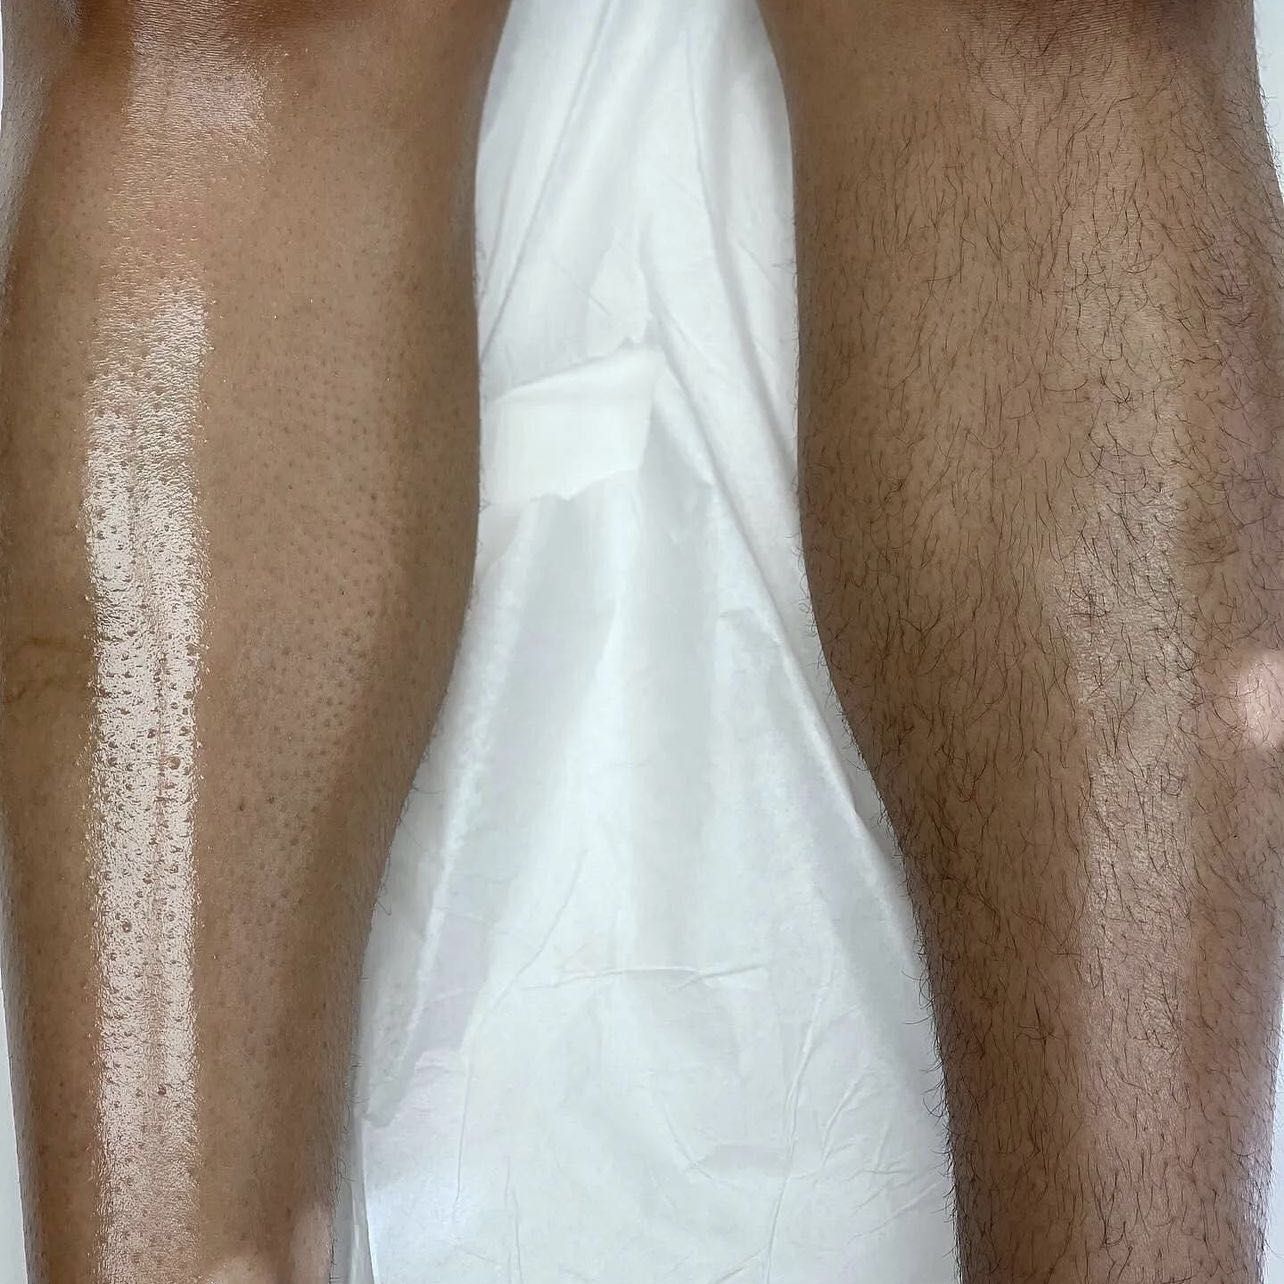 HALF LEGS (below or Above Legs portfolio